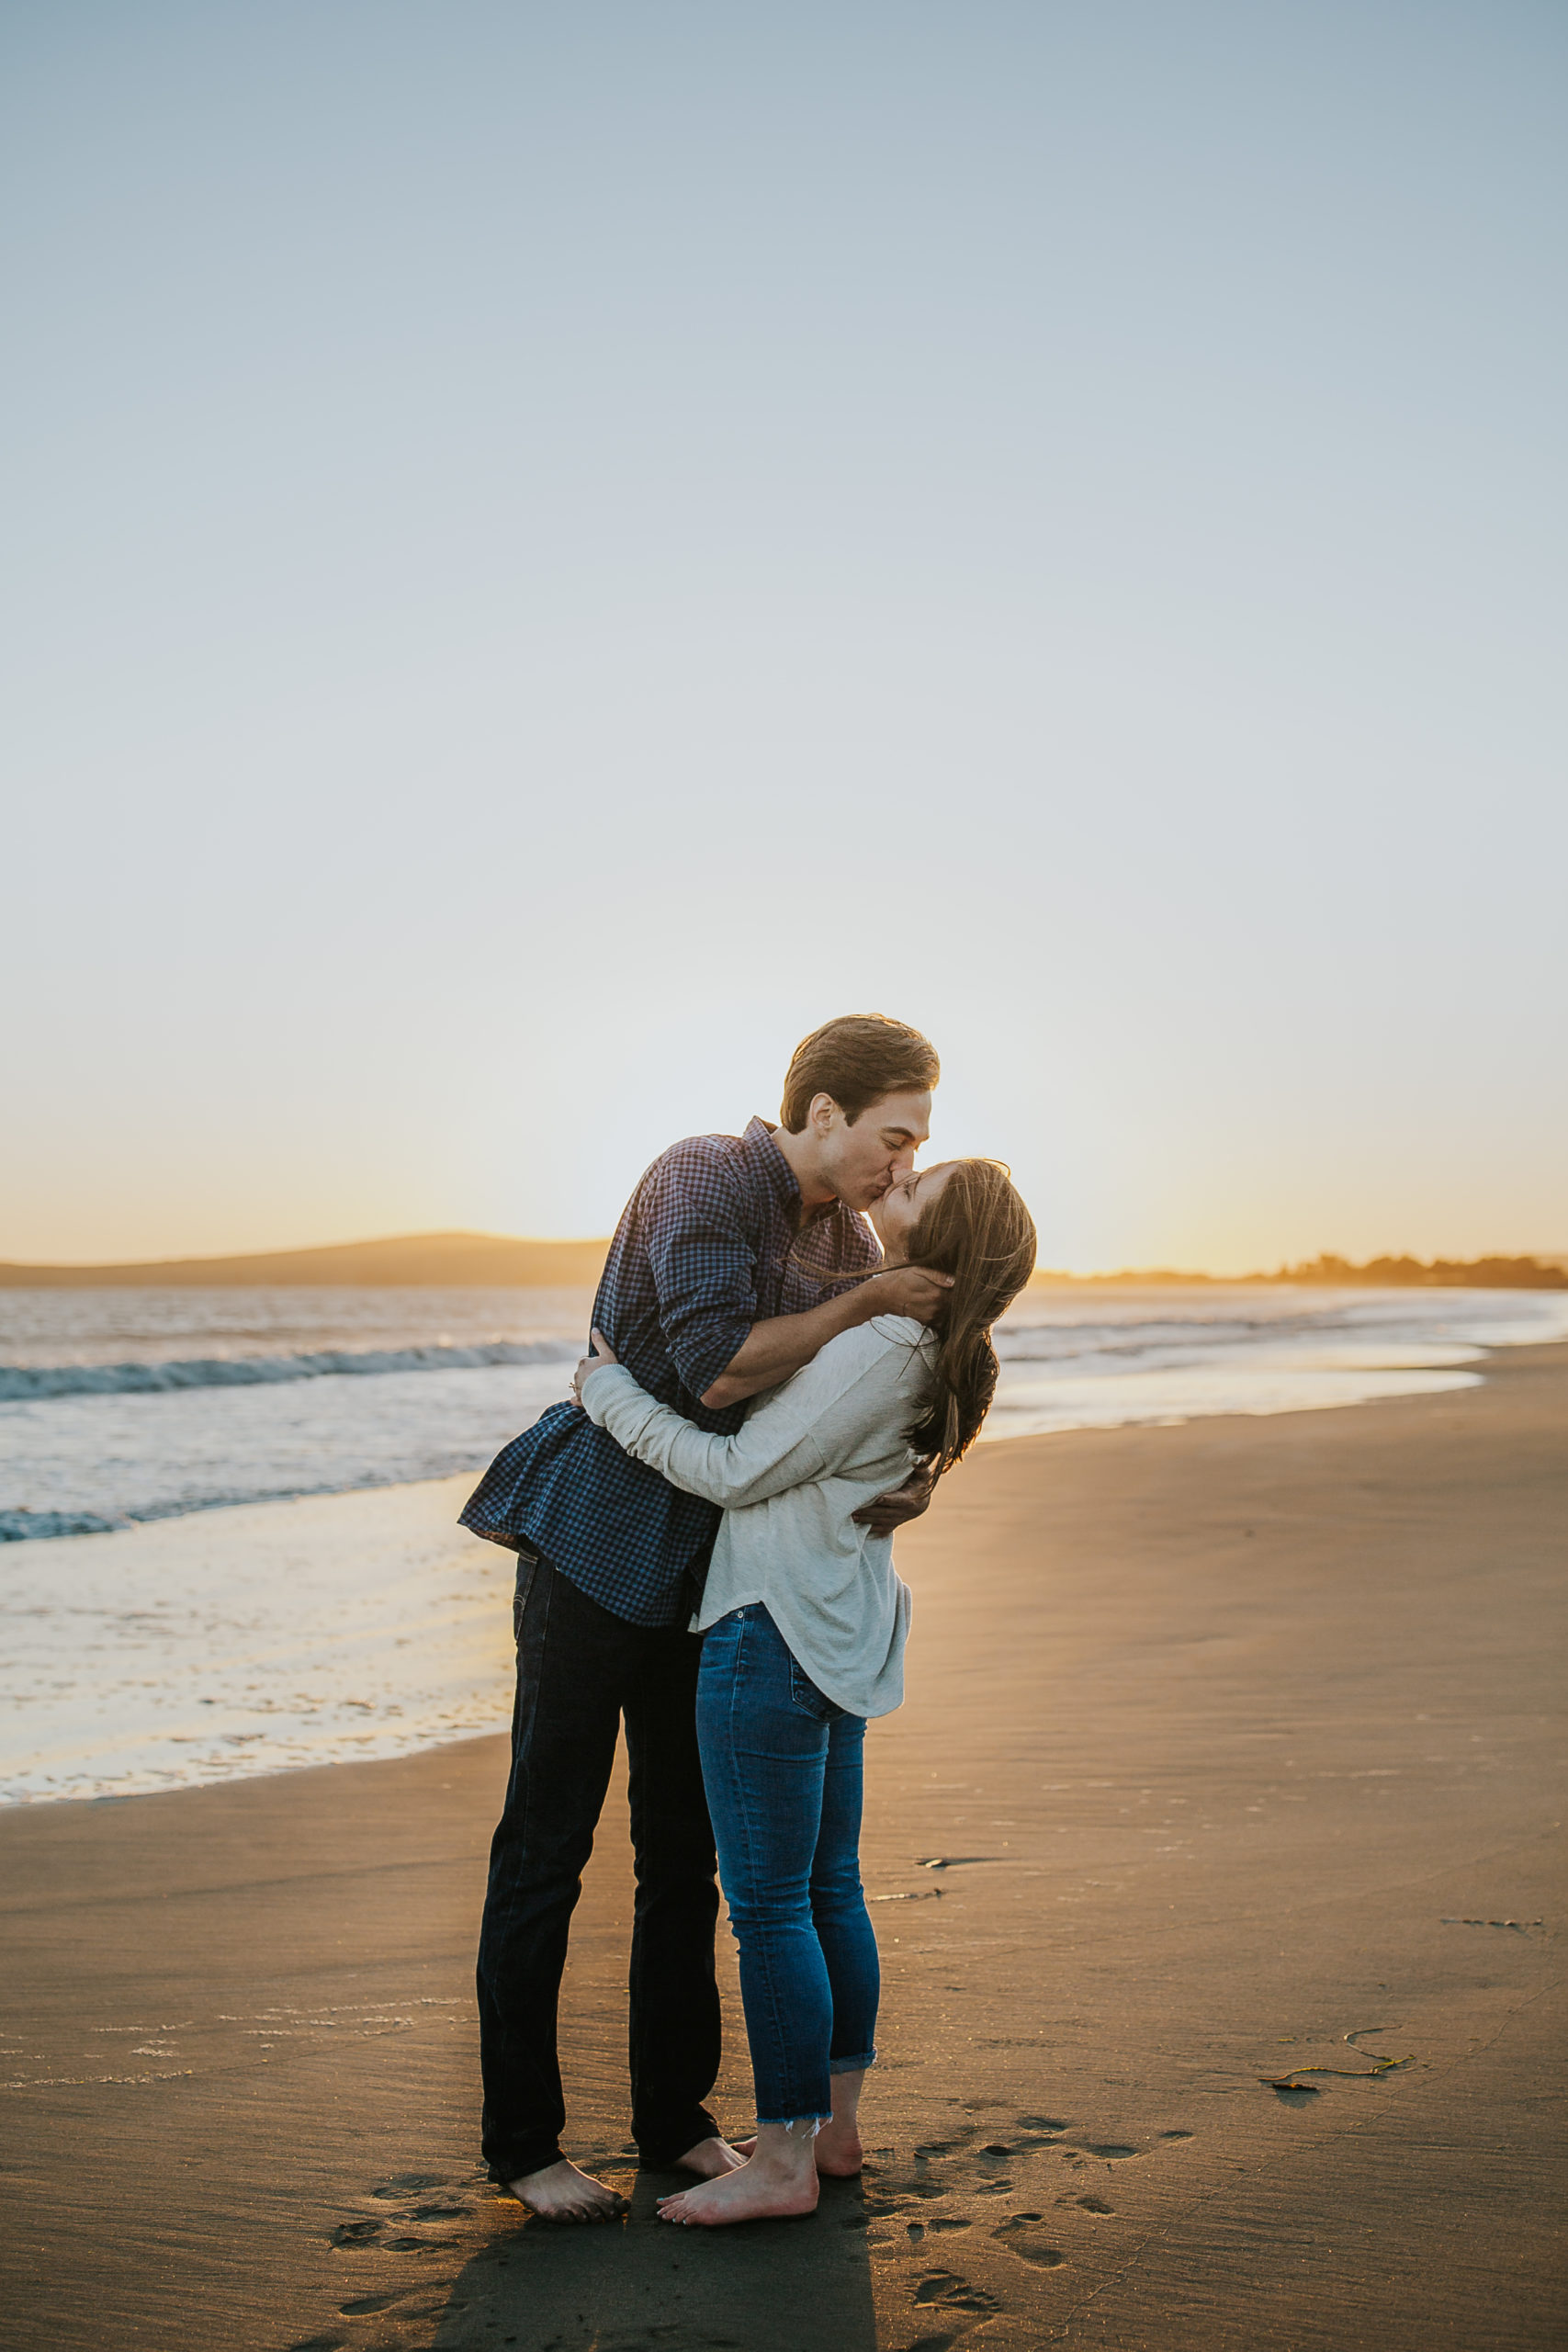 rebecca skidgel photography coastal engagement photographer bodega bay couple holding each other kissing